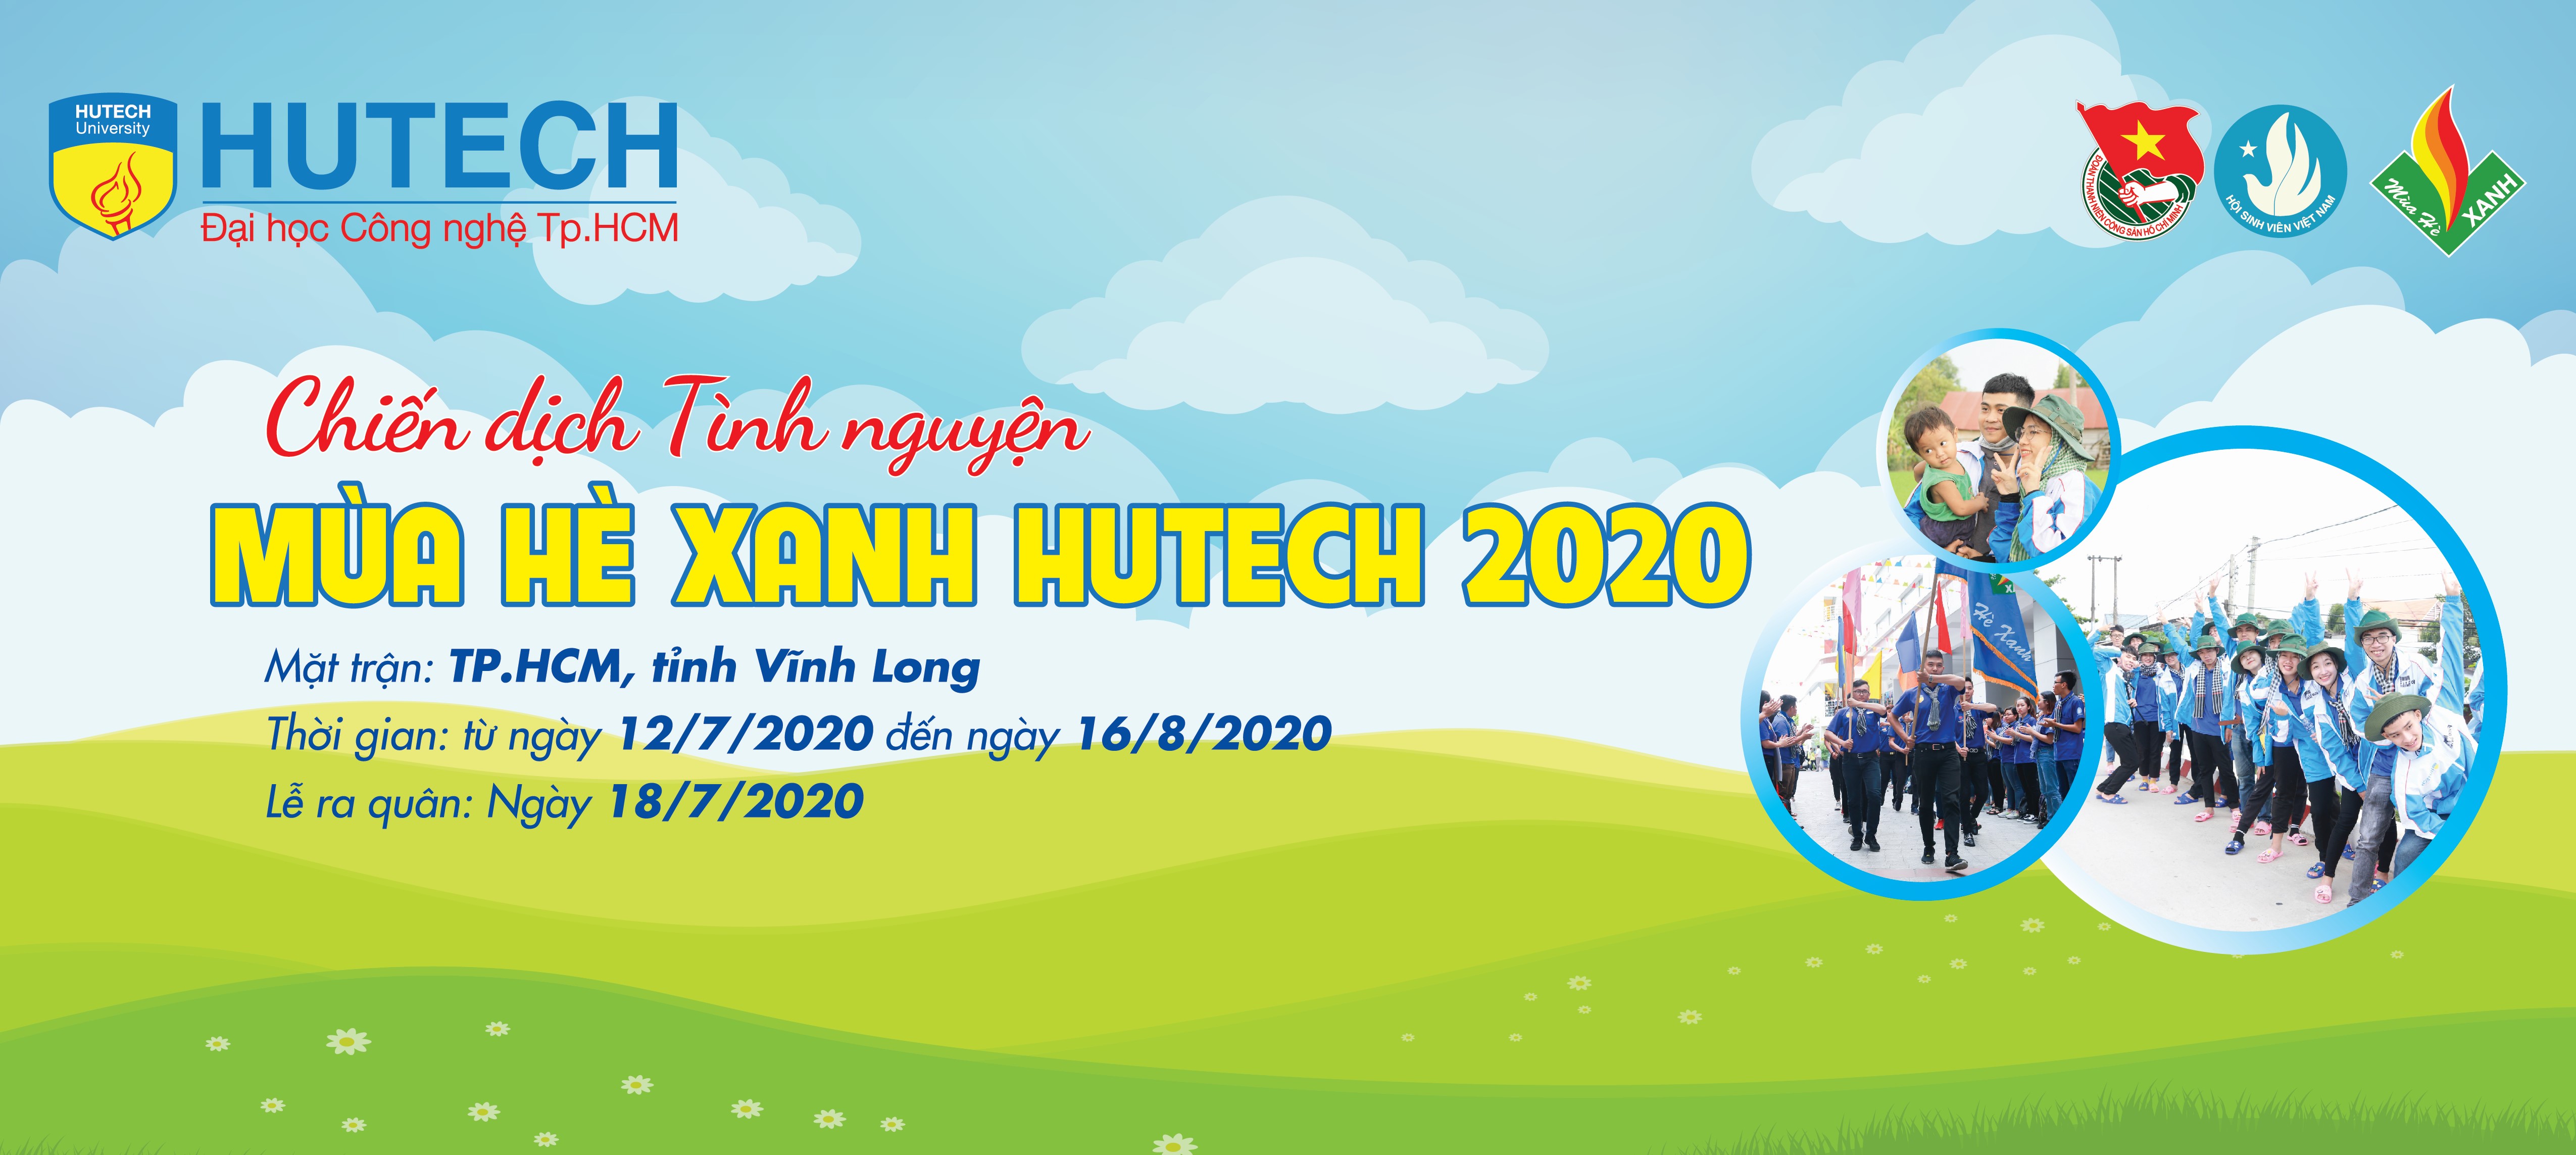 CÔNG BỐ DANH SÁCH CHIẾN SĨ MÙA HÈ XANH HUTECH 2020 3